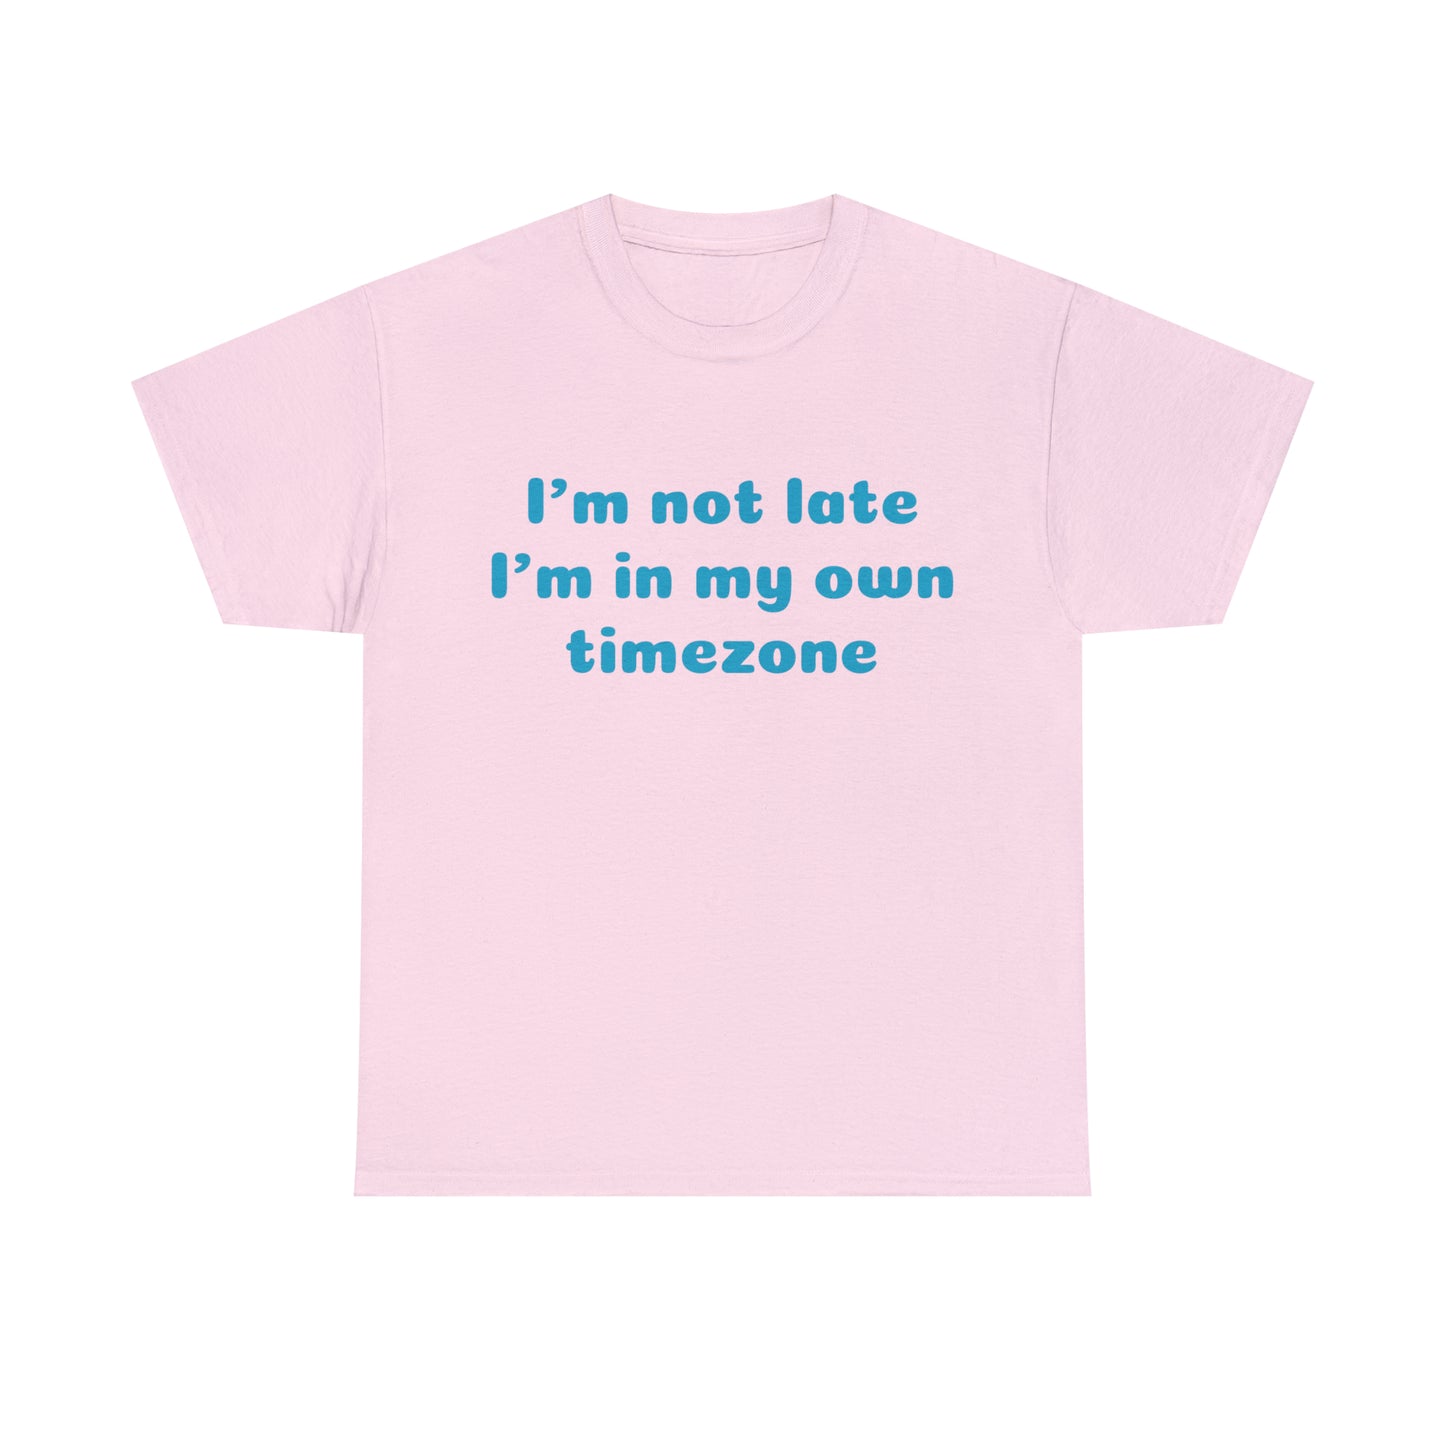 Custom Parody T-shirt, Im not late, Im in my own timezone shirt design